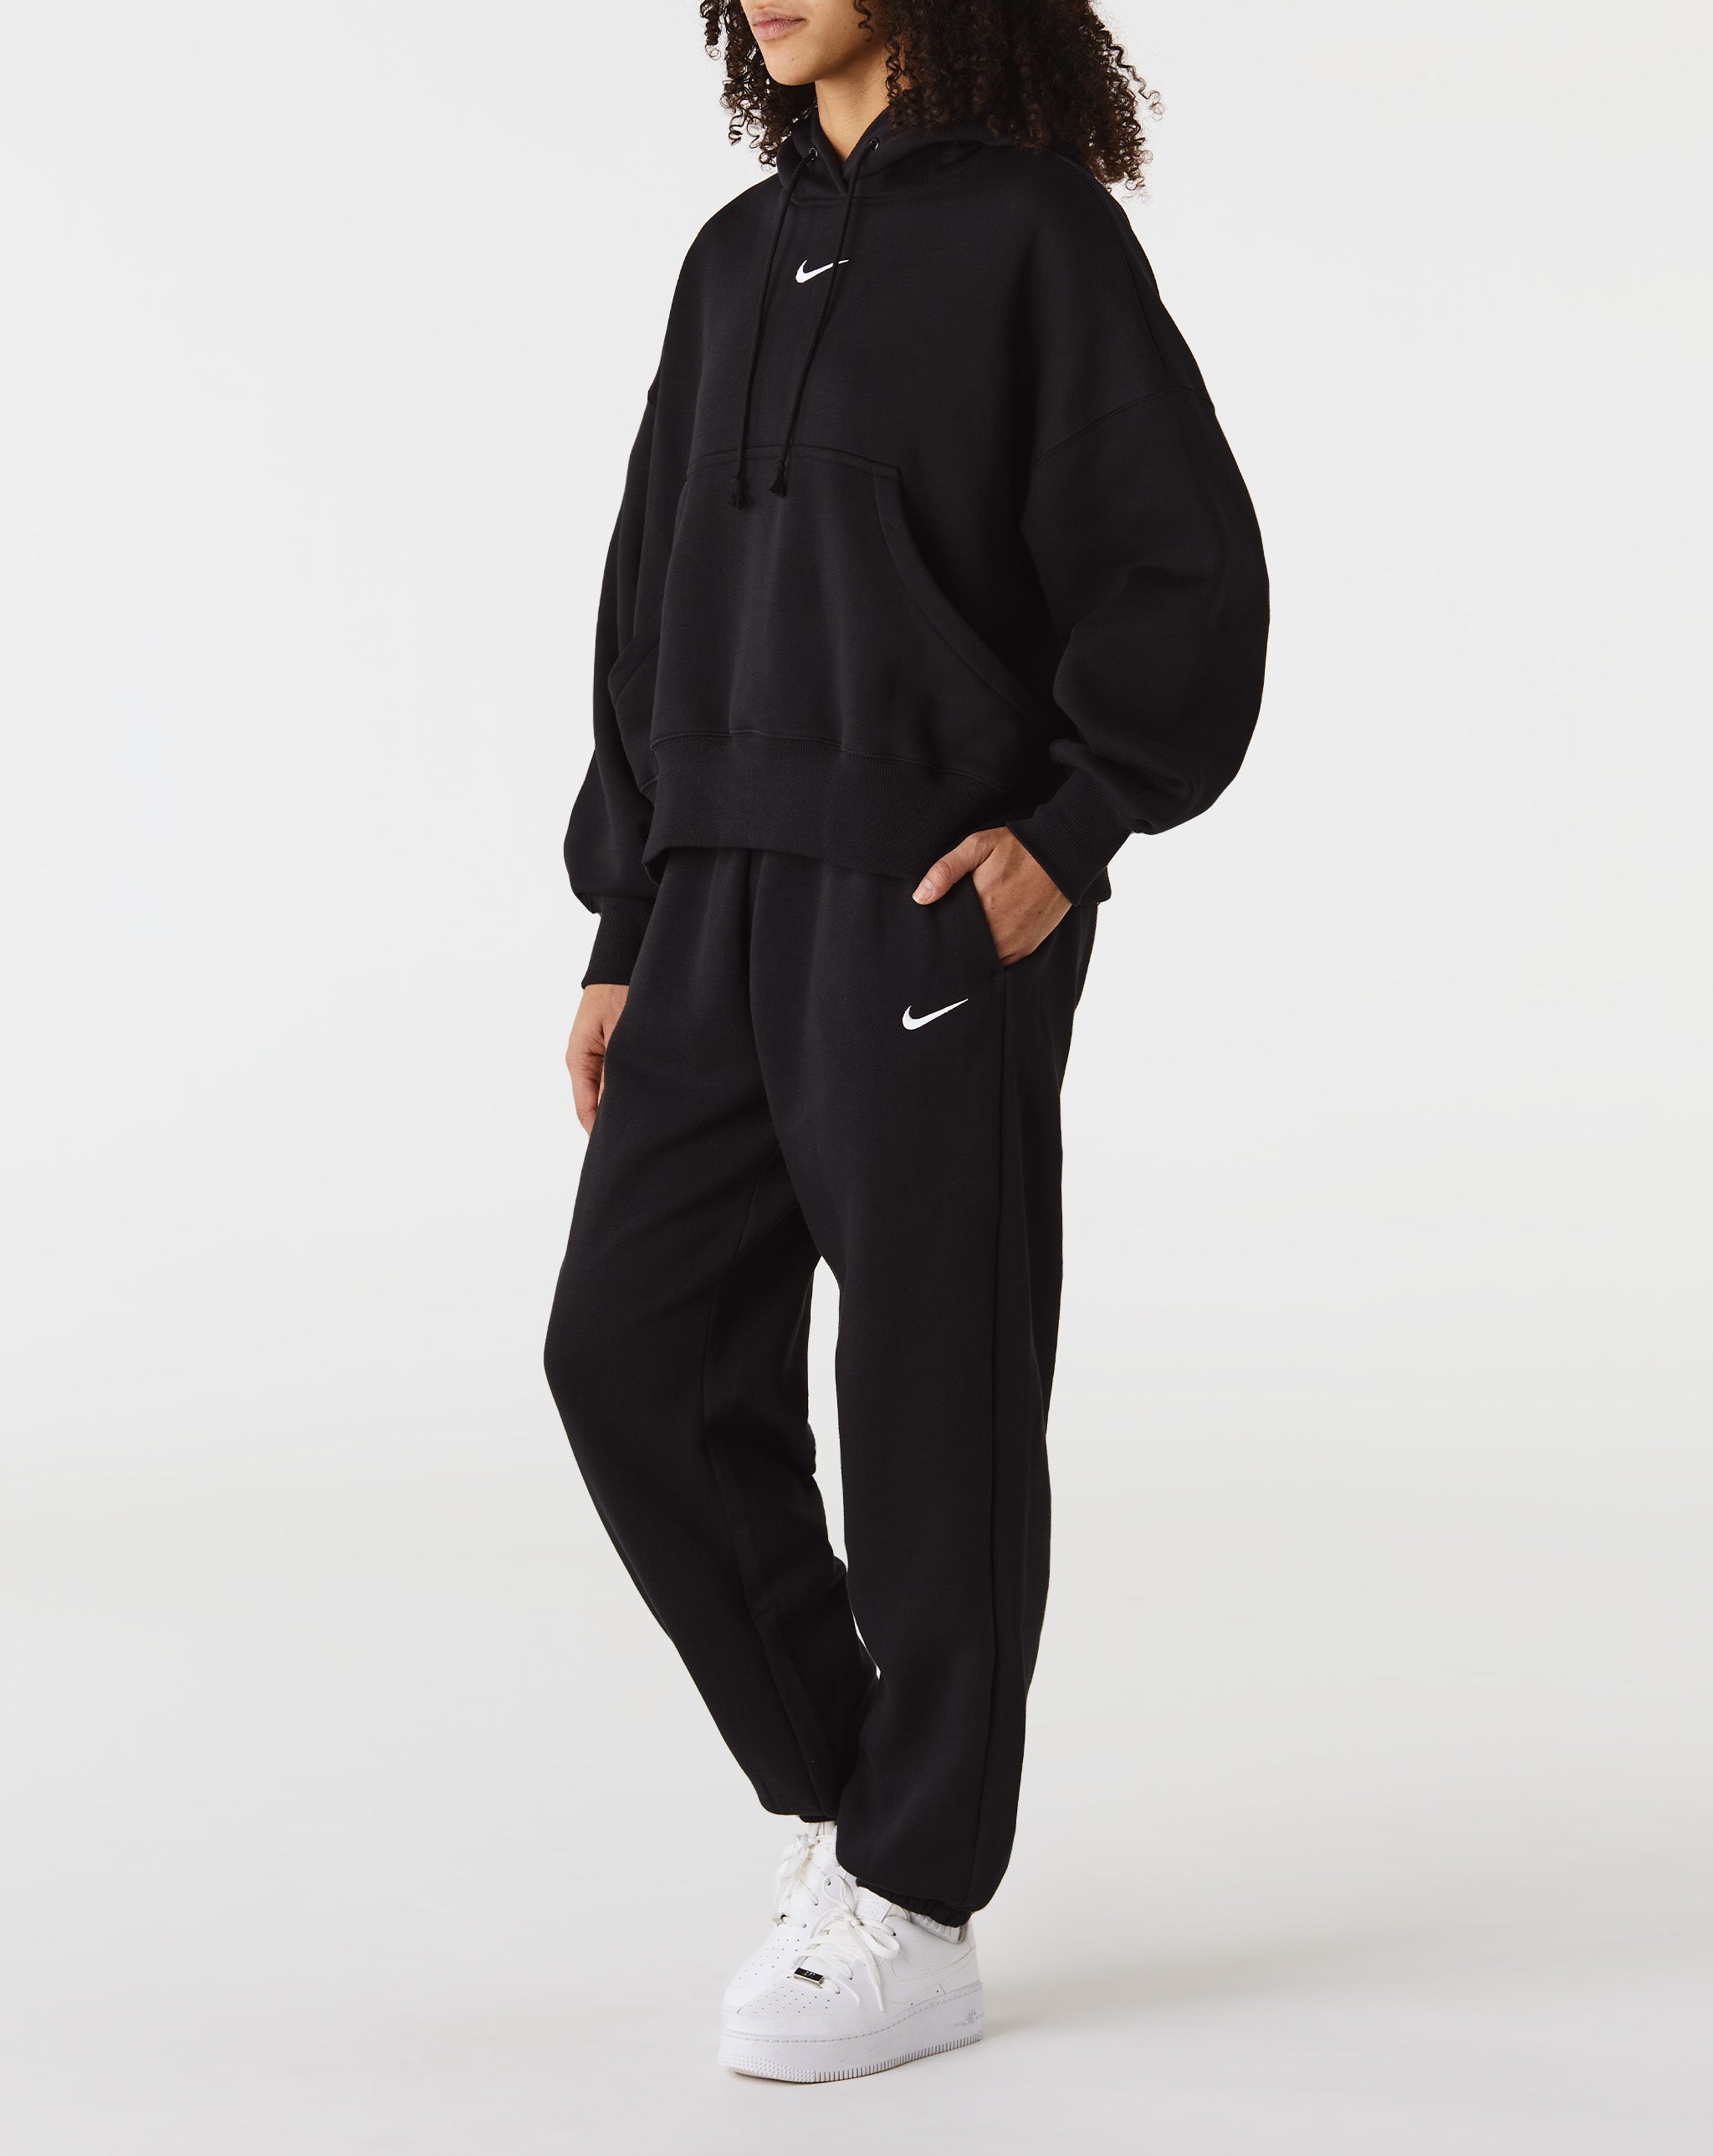 Nike Women's Phoenix Fleece High-Rise Oversized Pants - Rule of Next Apparel